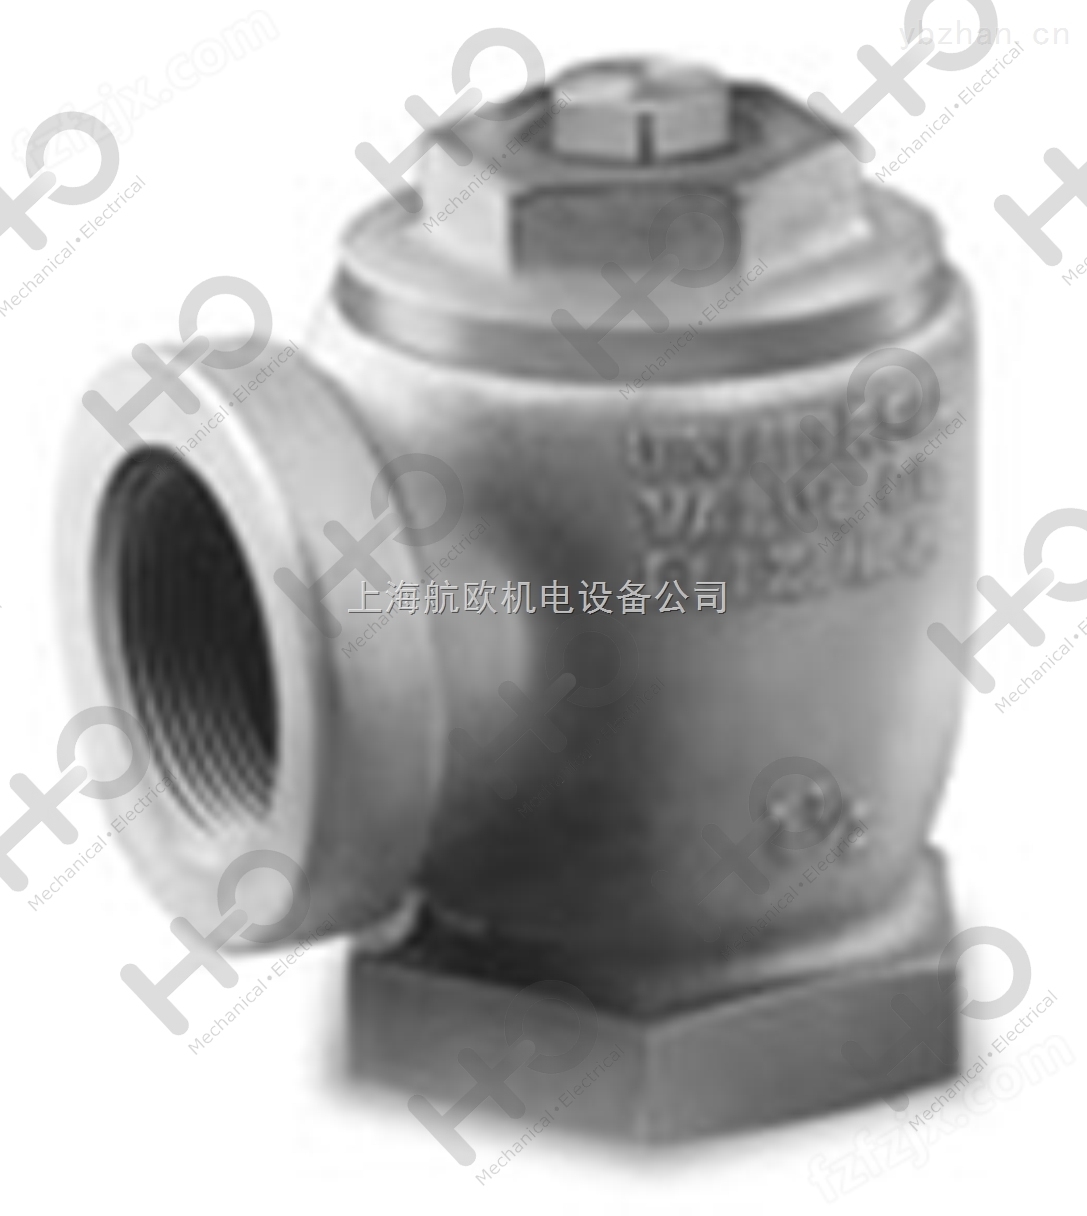 DGF-100增压泵供应商